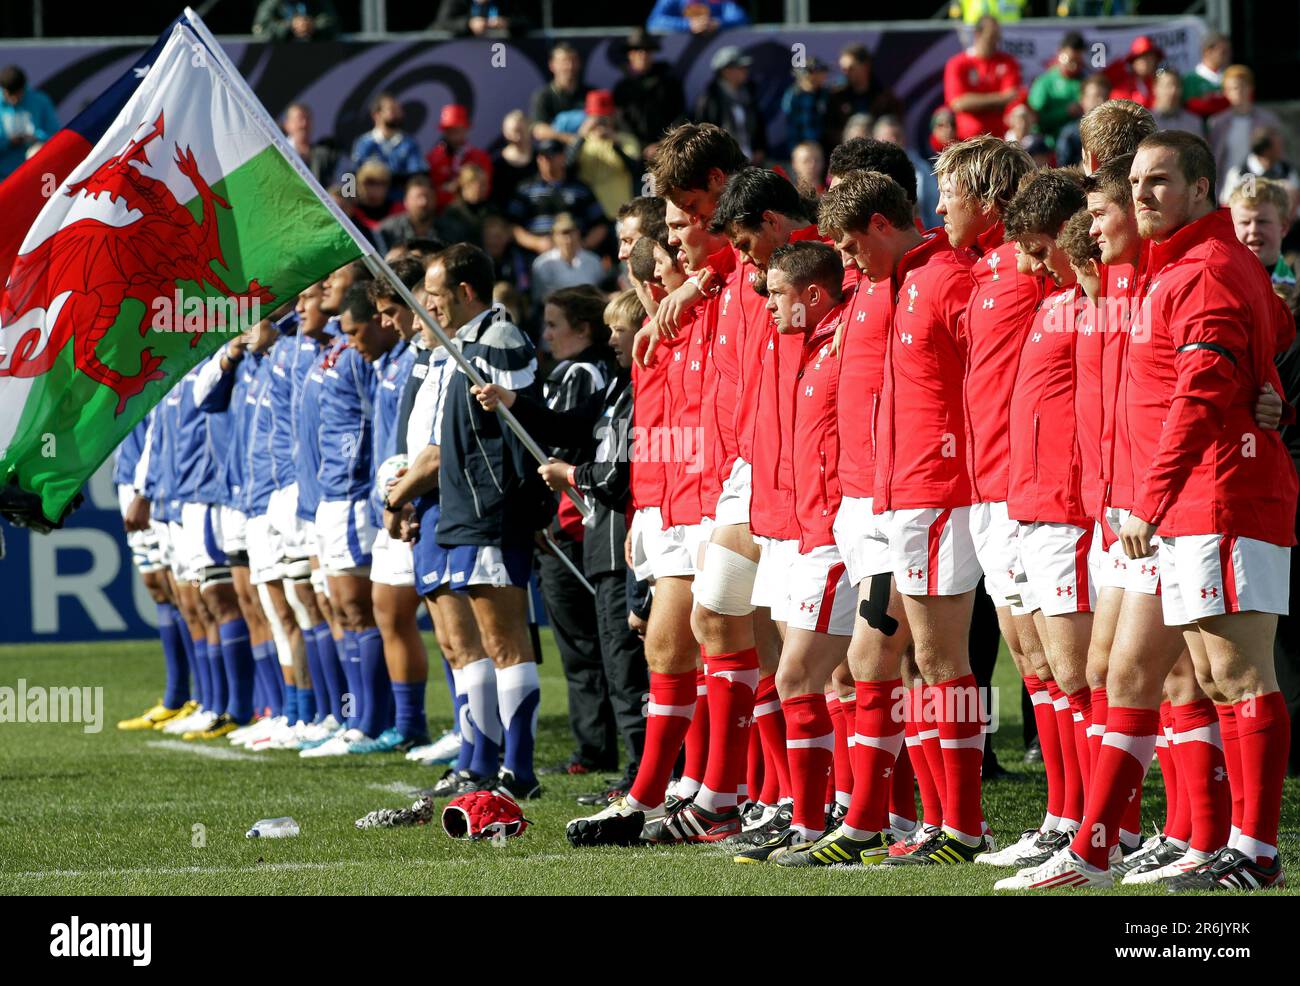 Samoa und Wales stehen für die Nationalhymnen vor einem Spiel der Rugby-Weltmeisterschaft 2011, Waikato Stadium, Hamilton, Neuseeland, Sonntag, 18. September 2011. Stockfoto